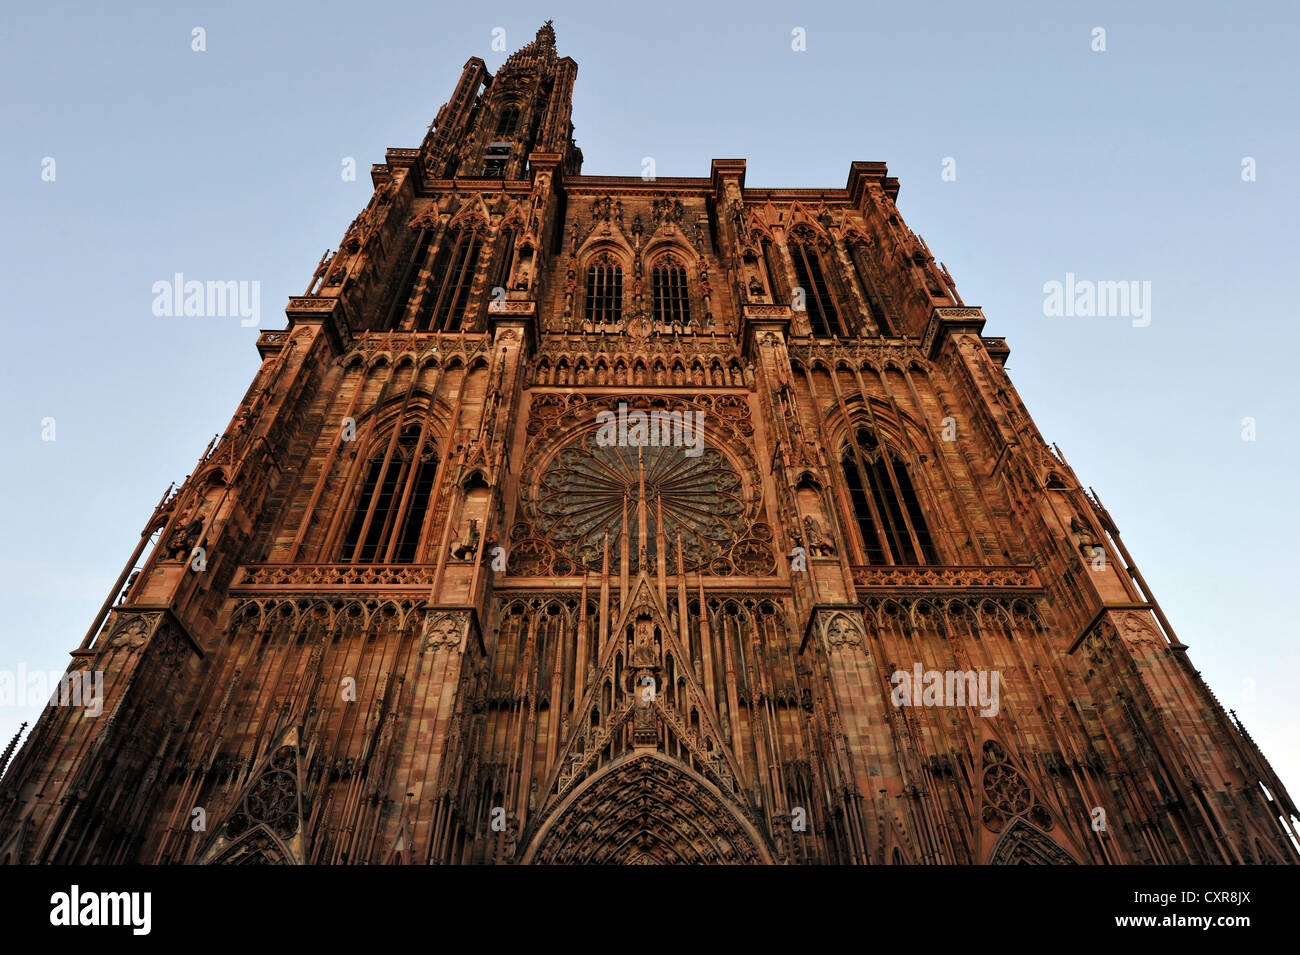 La cathédrale de Strasbourg, la cathédrale de Notre Dame de Strasbourg, Strasbourg, département du Bas-Rhin, Alsace, France, Europe Banque D'Images